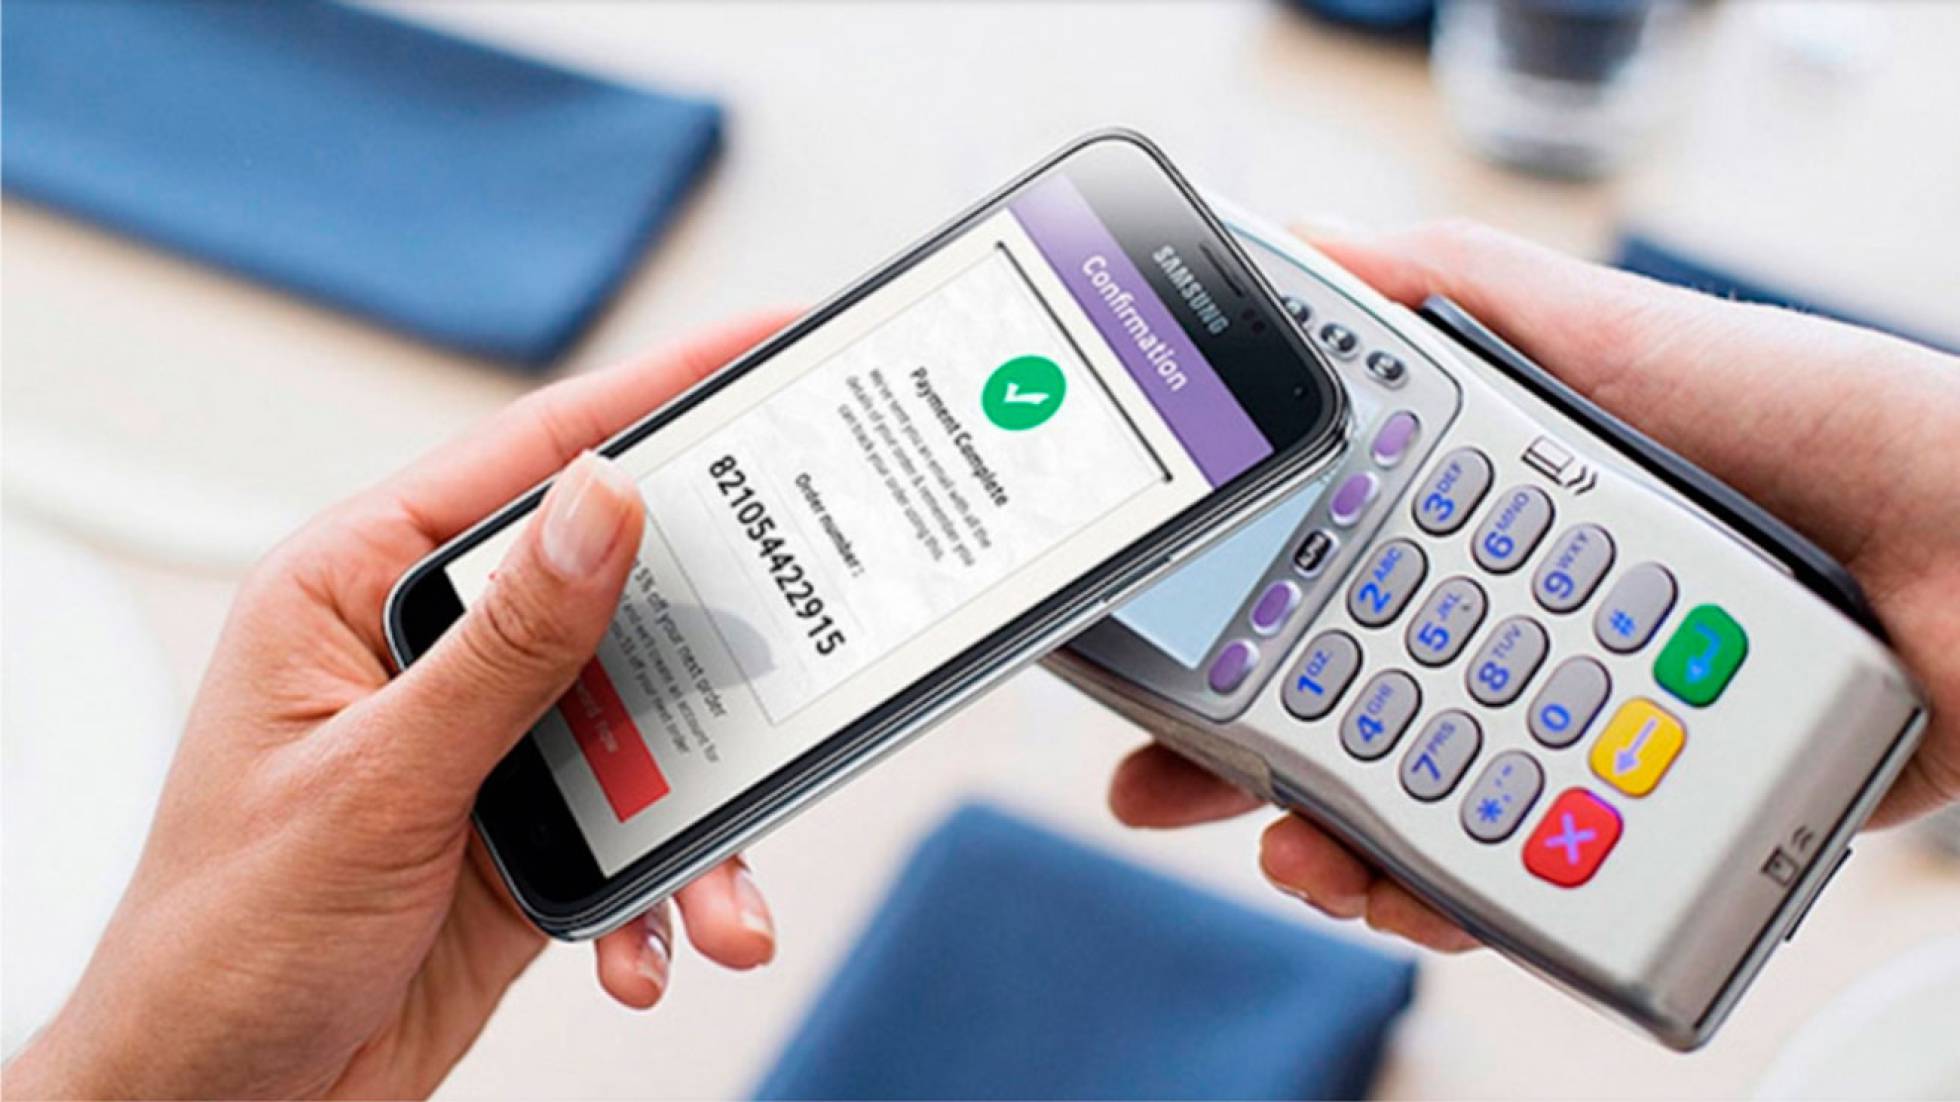 iPhone 5 implementaría pagos con NFC